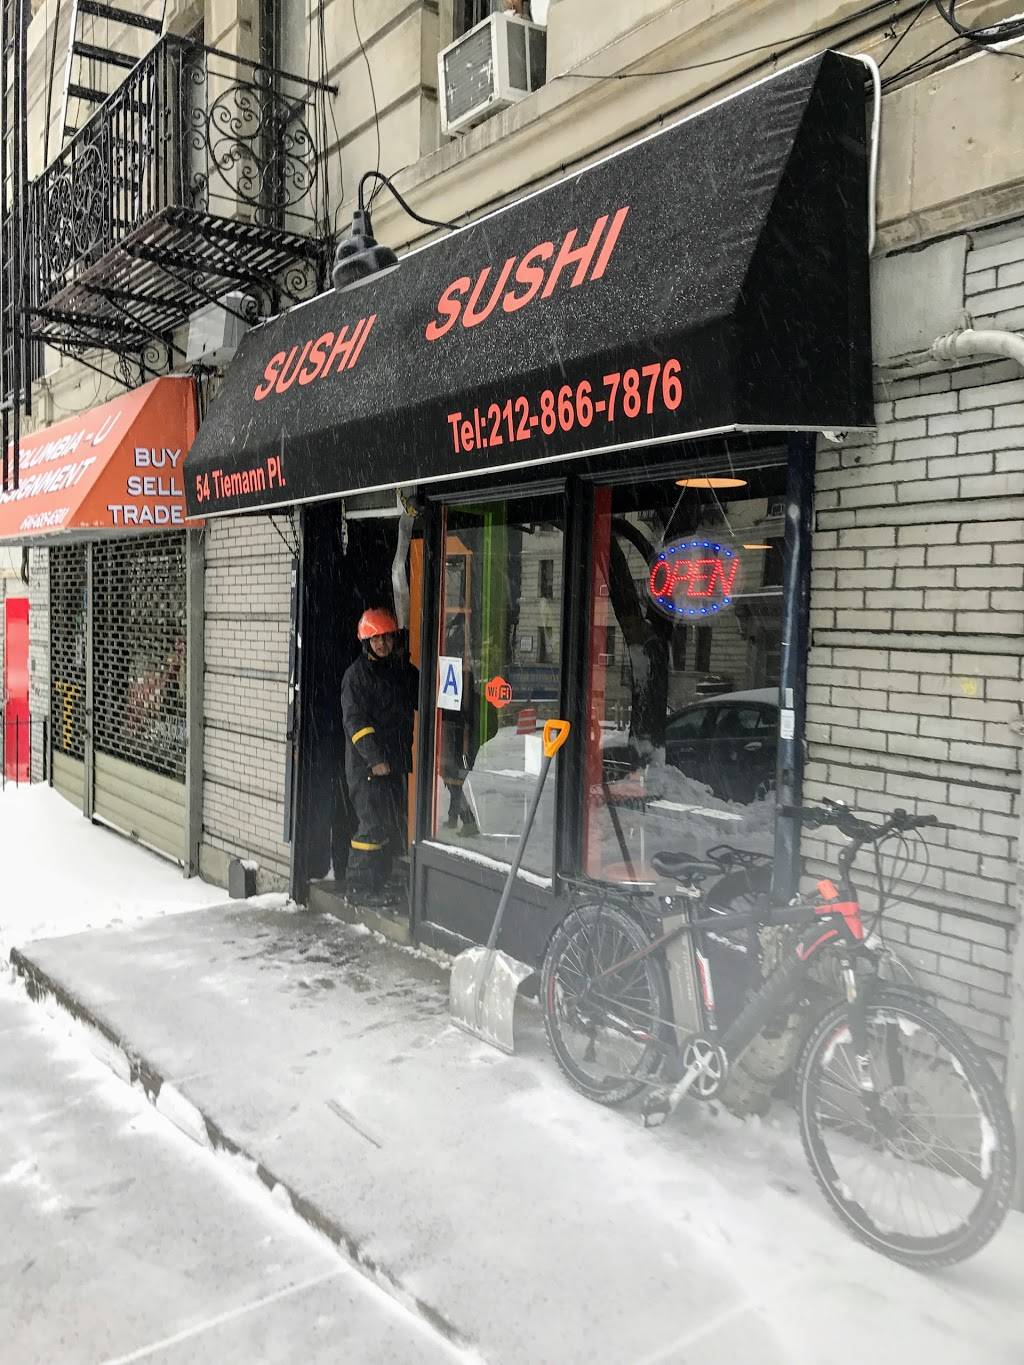 Sushi Sushi | restaurant | 1504 Amsterdam Ave, New York, NY 10031, USA | 2128667876 OR +1 212-866-7876